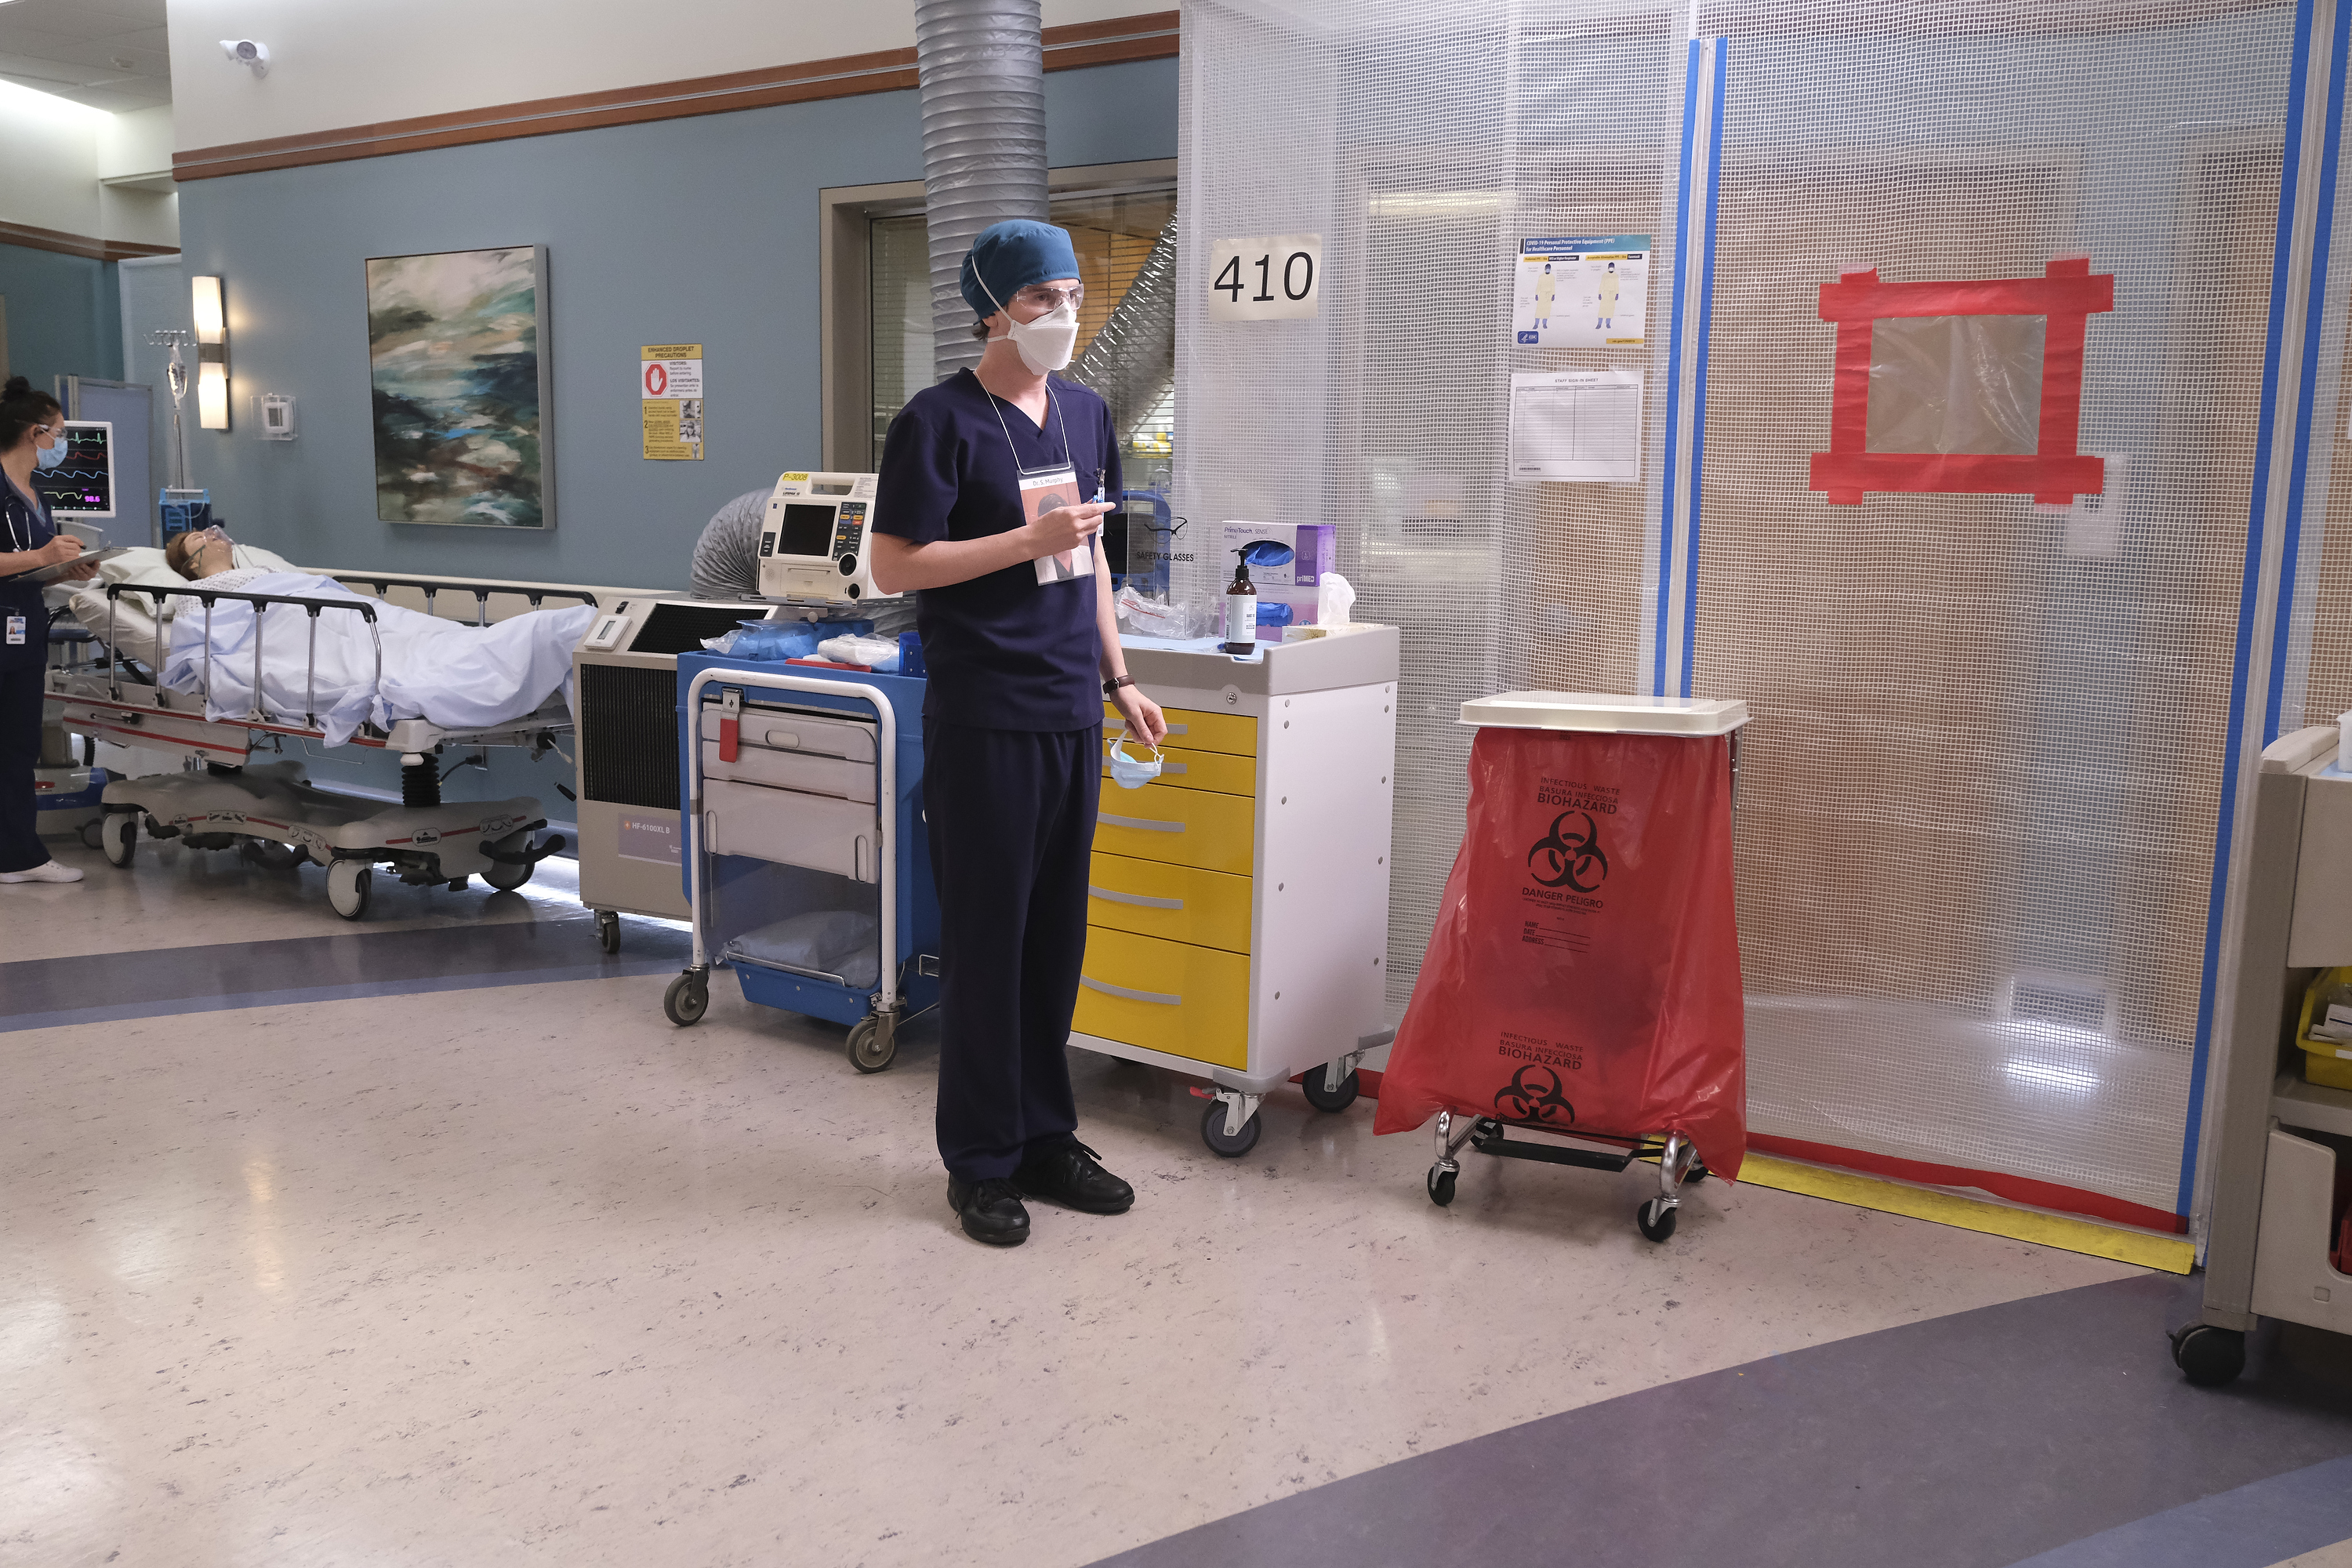 Den nya vardagen för Shaun Murphy (Freddie Highmore) på sjukhuset innefattar munskydd var han än går, plastpåsar med varningsskyltar och diverse avspärrningar. Det vill säga precis som på ett vanligt sjukhus. Foto: Viaplay.